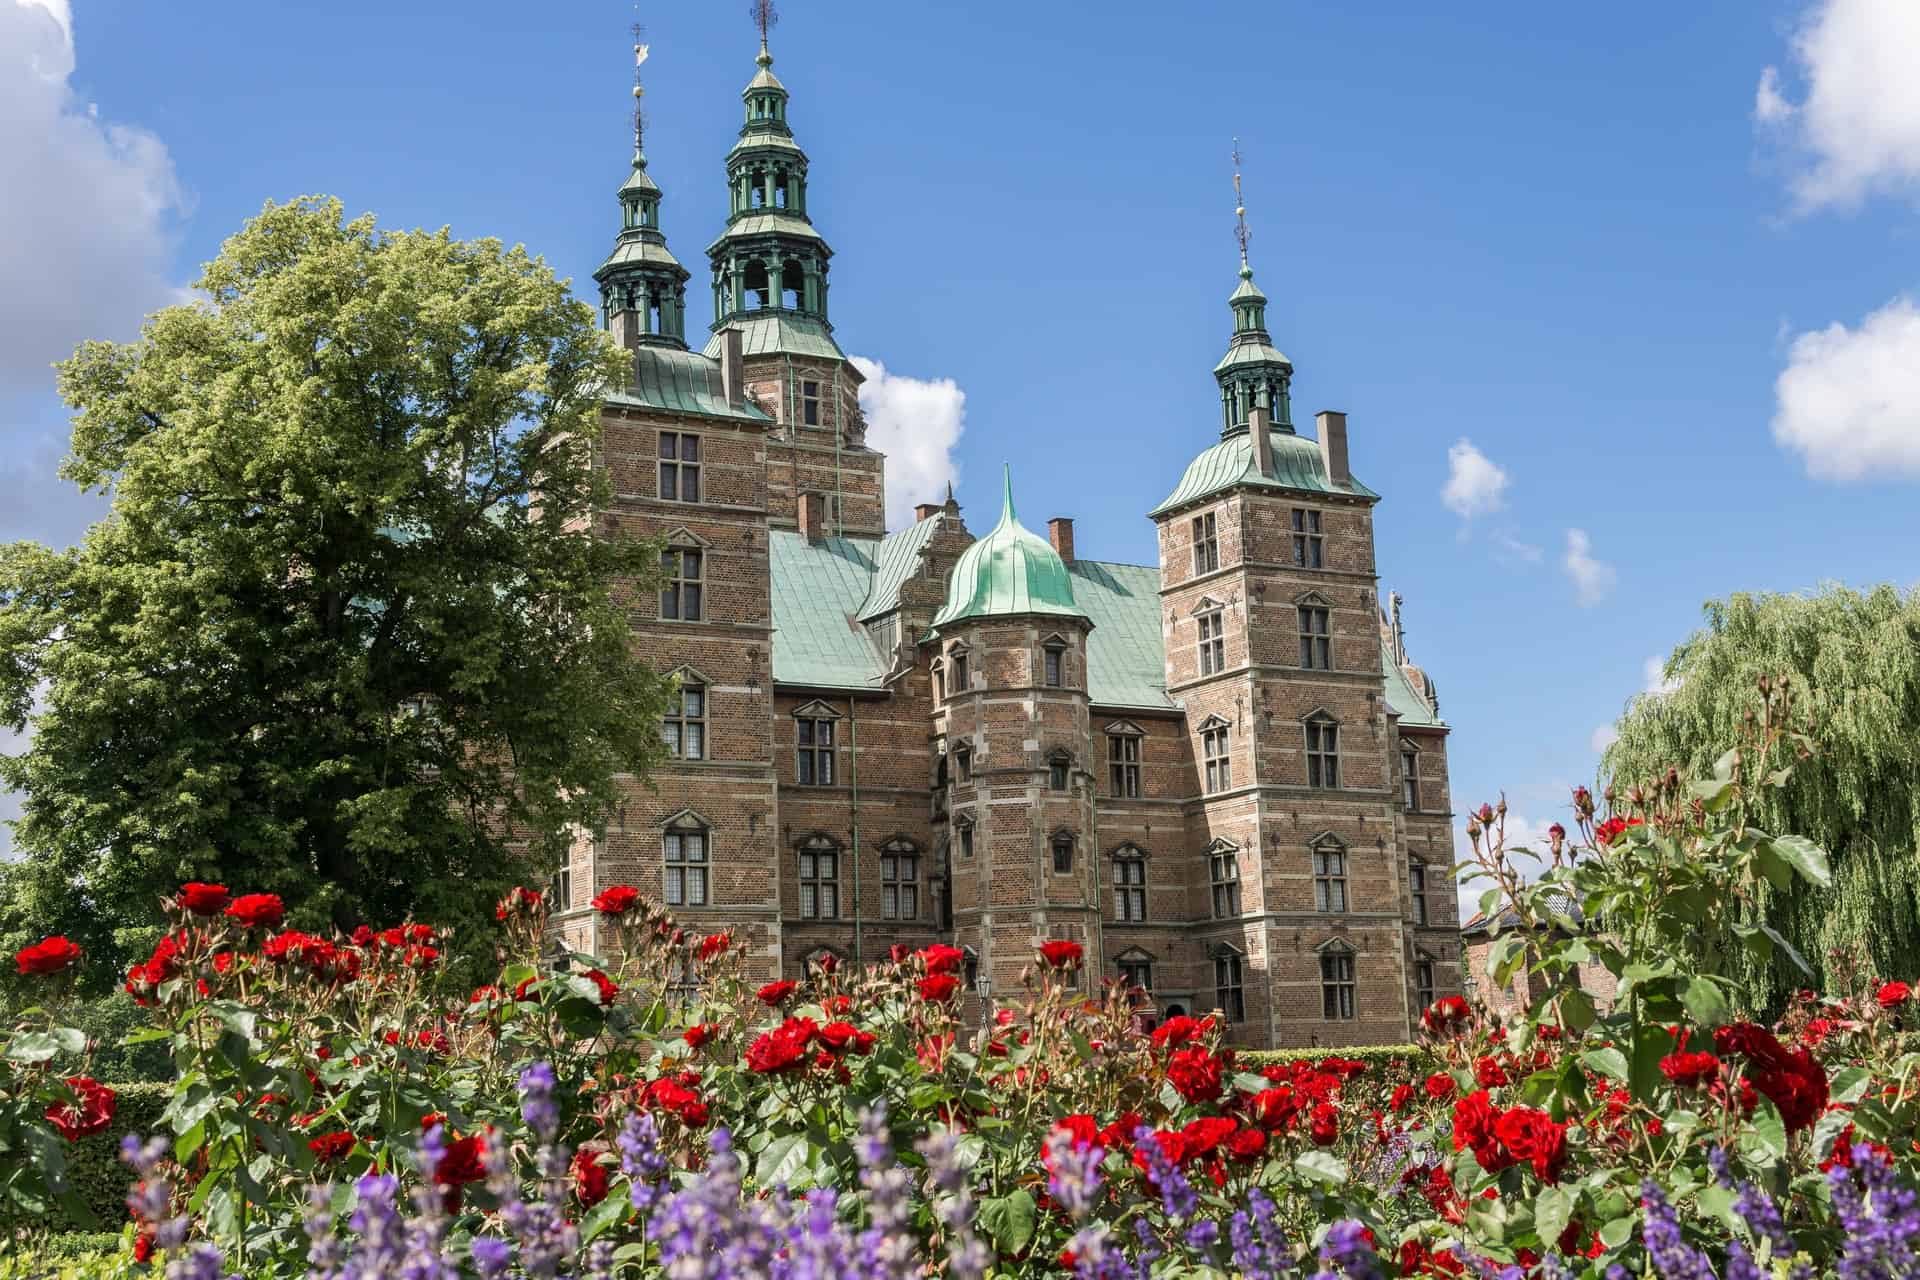 Best things to do in Copenhagen Denmark - Sally Bunnell - Rosenborg Castle by Javier Rincon on Unsplash